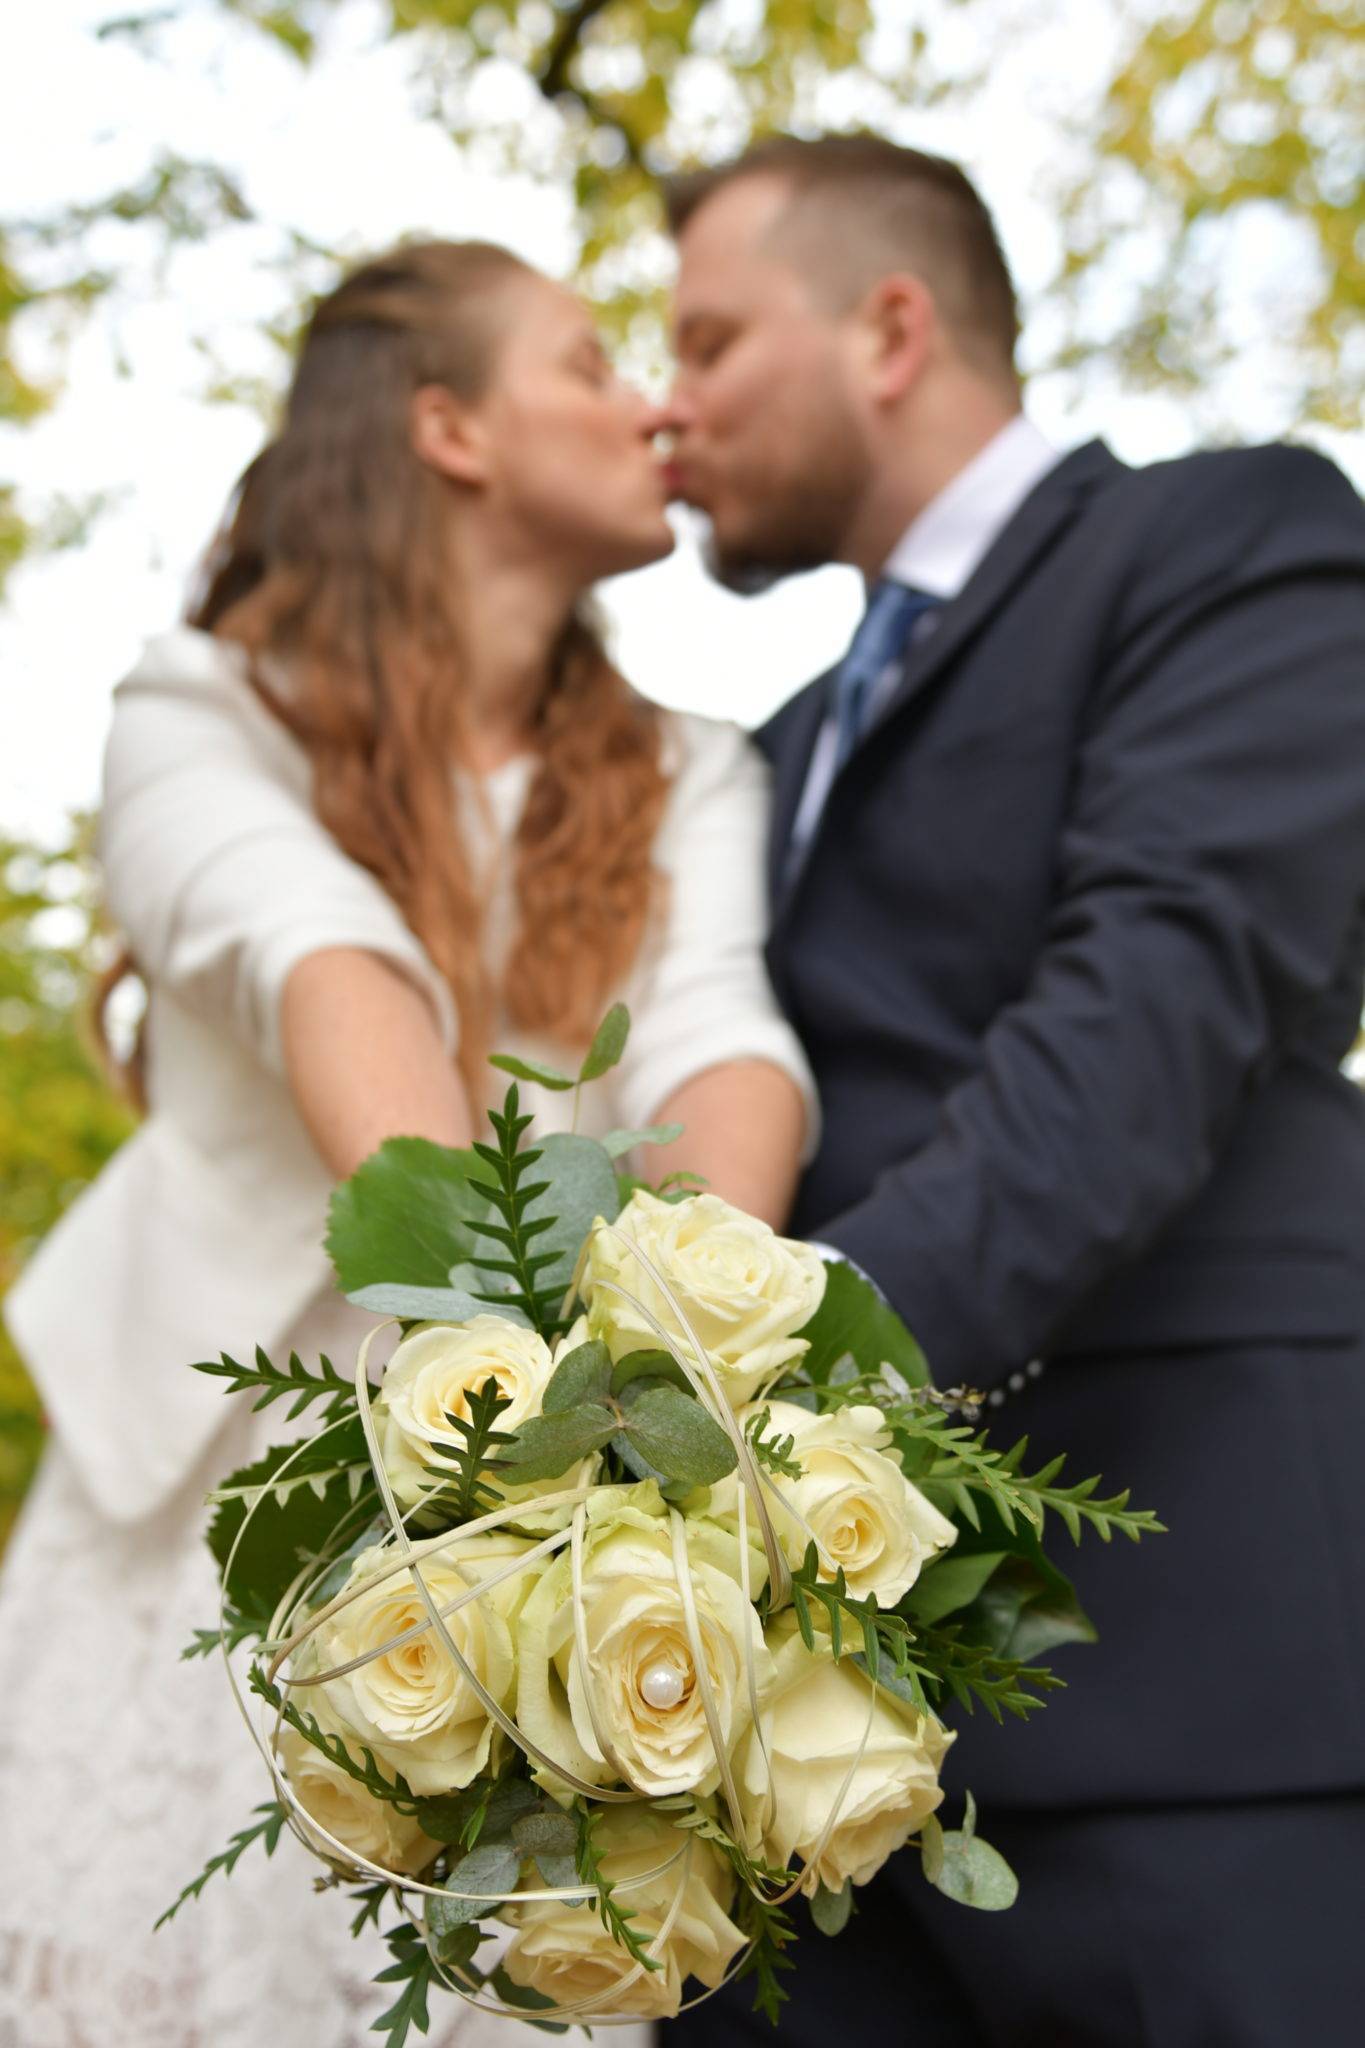 Brautpaarshooting mit Brautstrauss und Kuss